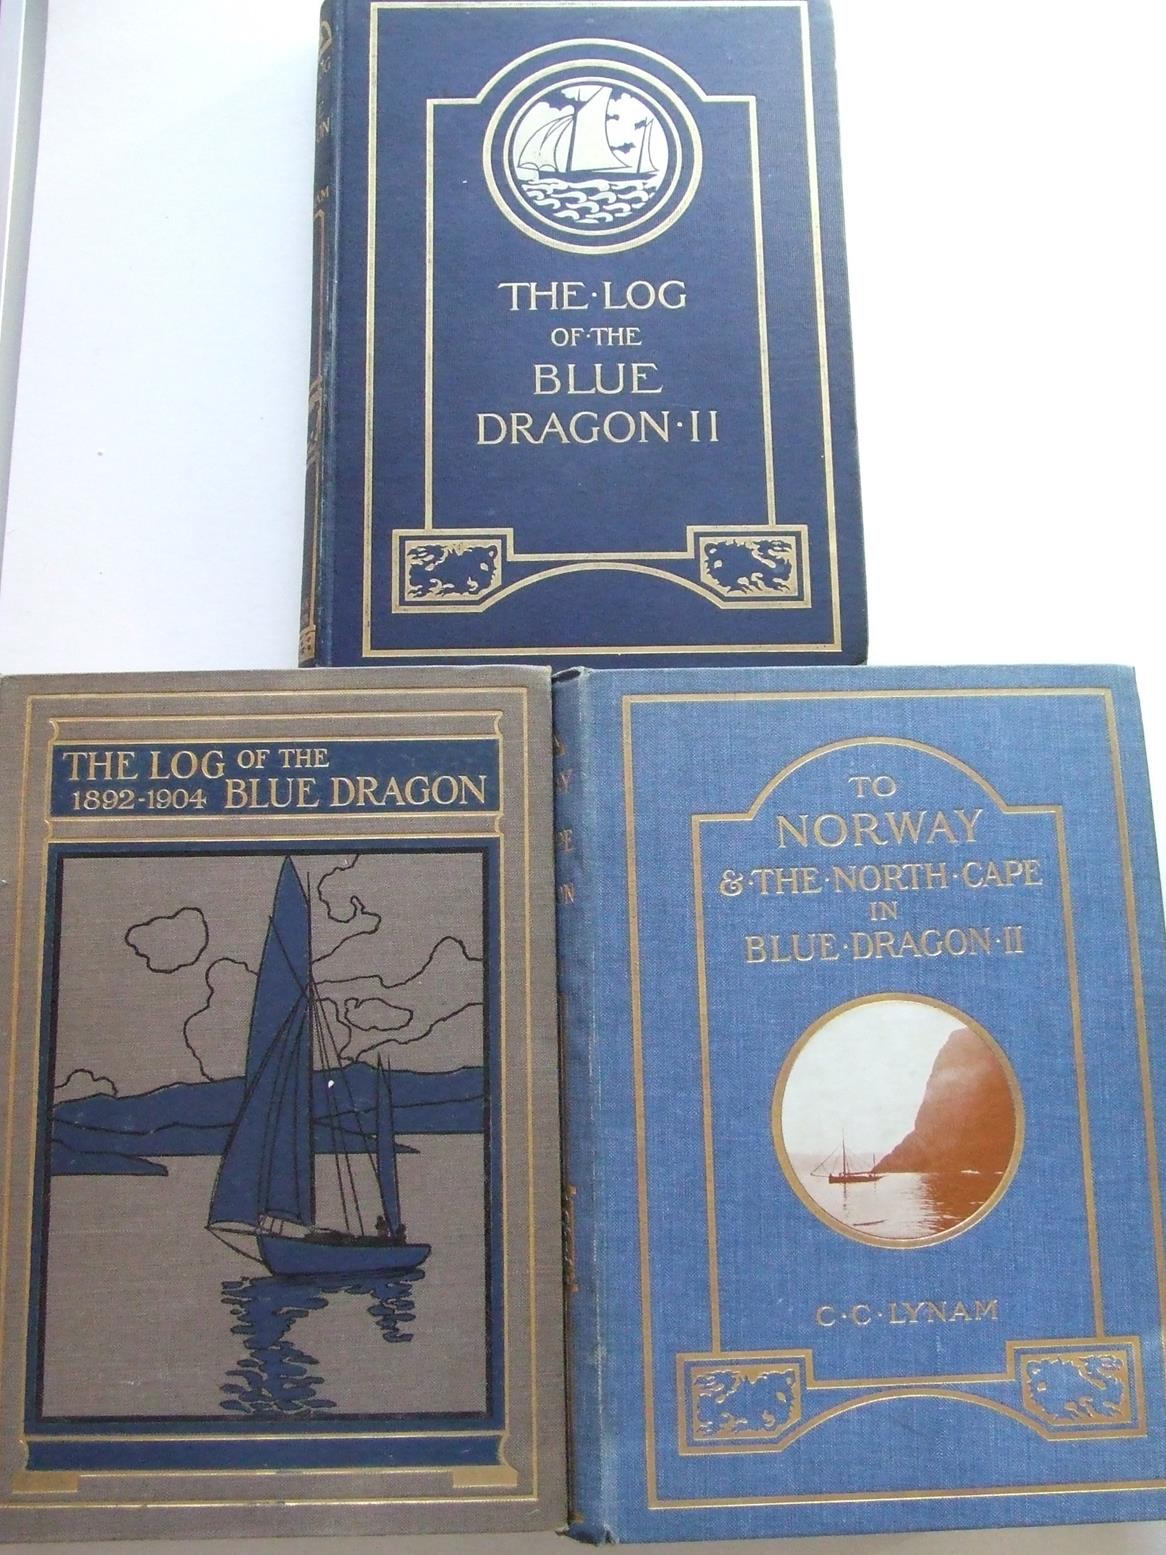 The 'Blue Dragon' Trilogy